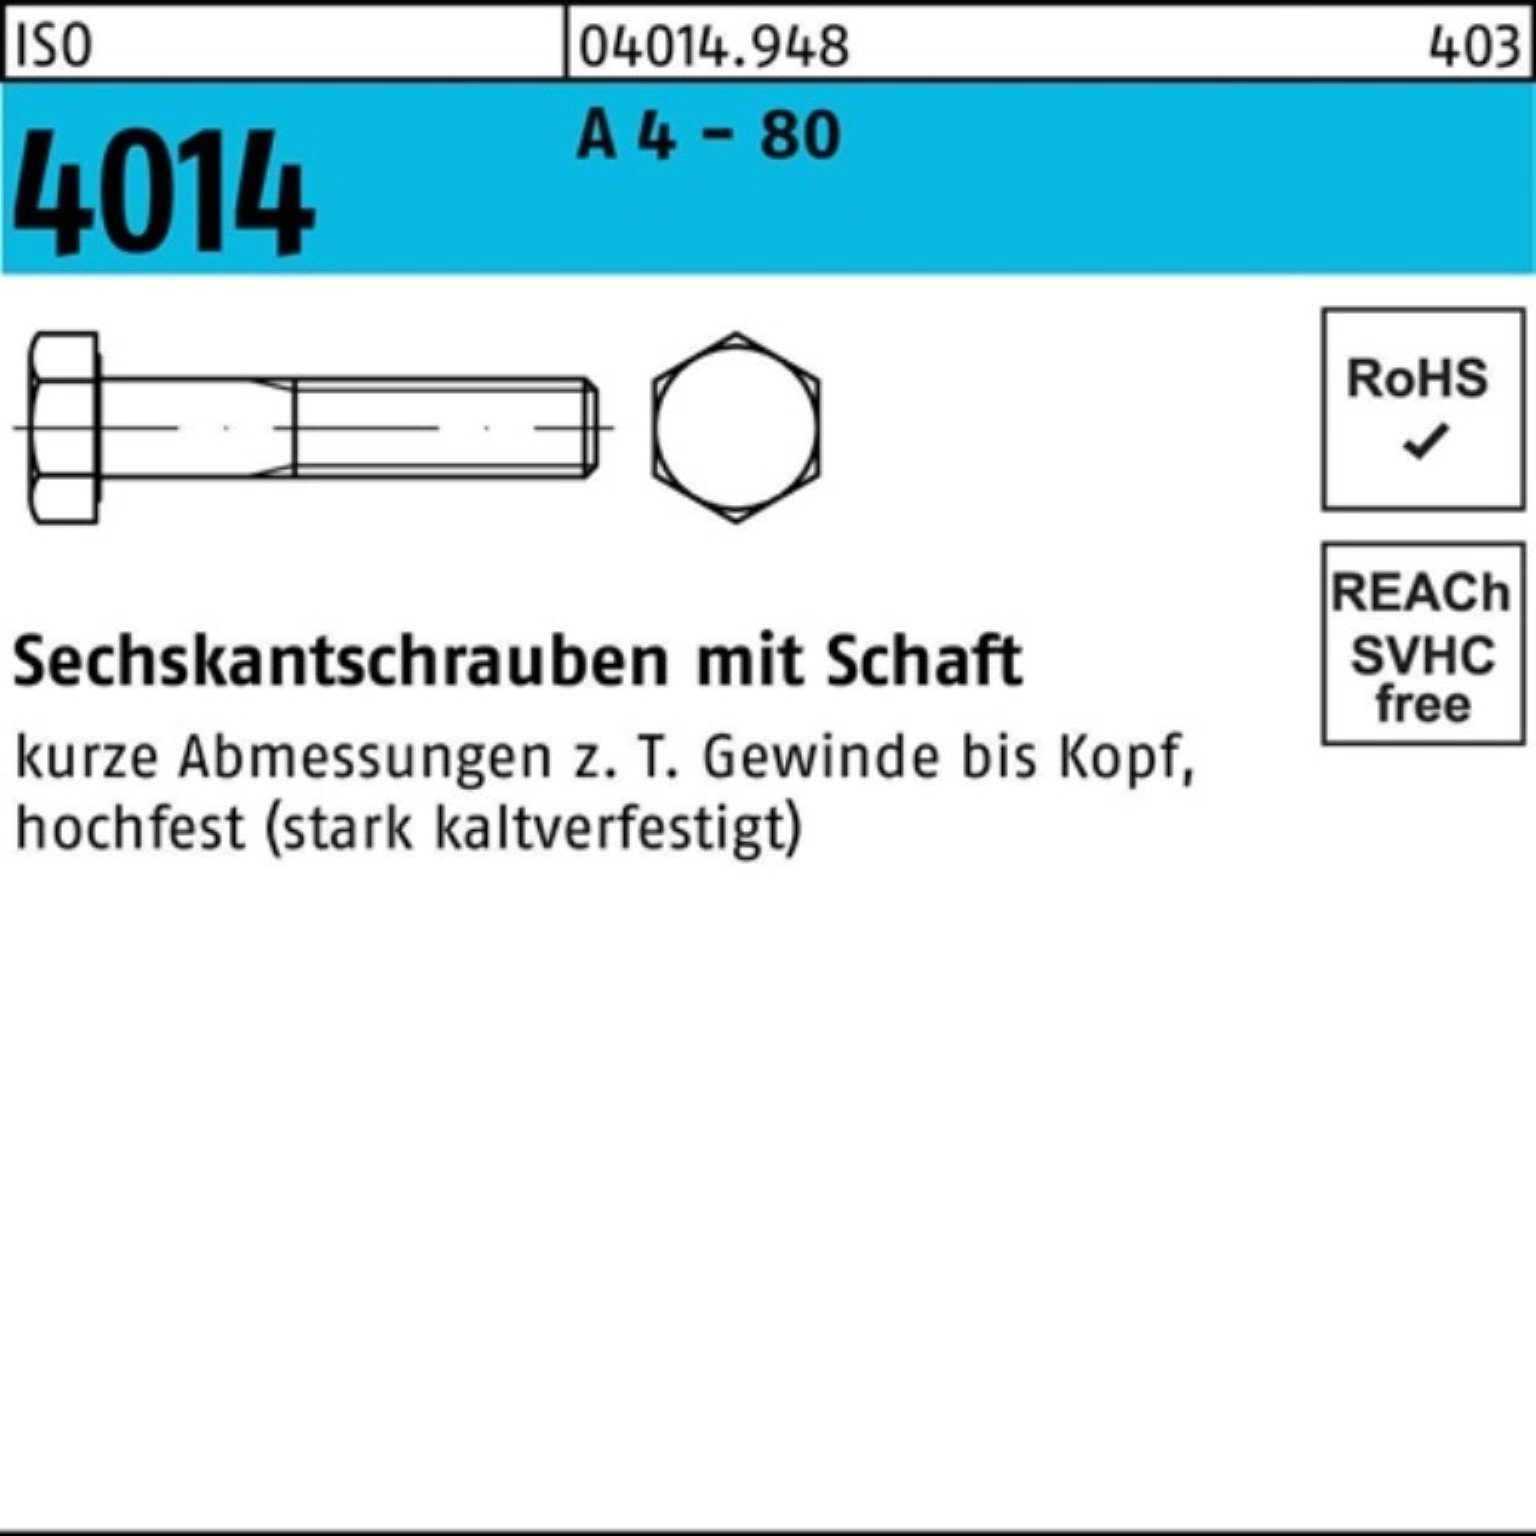 Bufab Sechskantschraube 100er Pack Sechskantschraube ISO 4014 Schaft M16x 180 A 4 - 80 1 Stüc